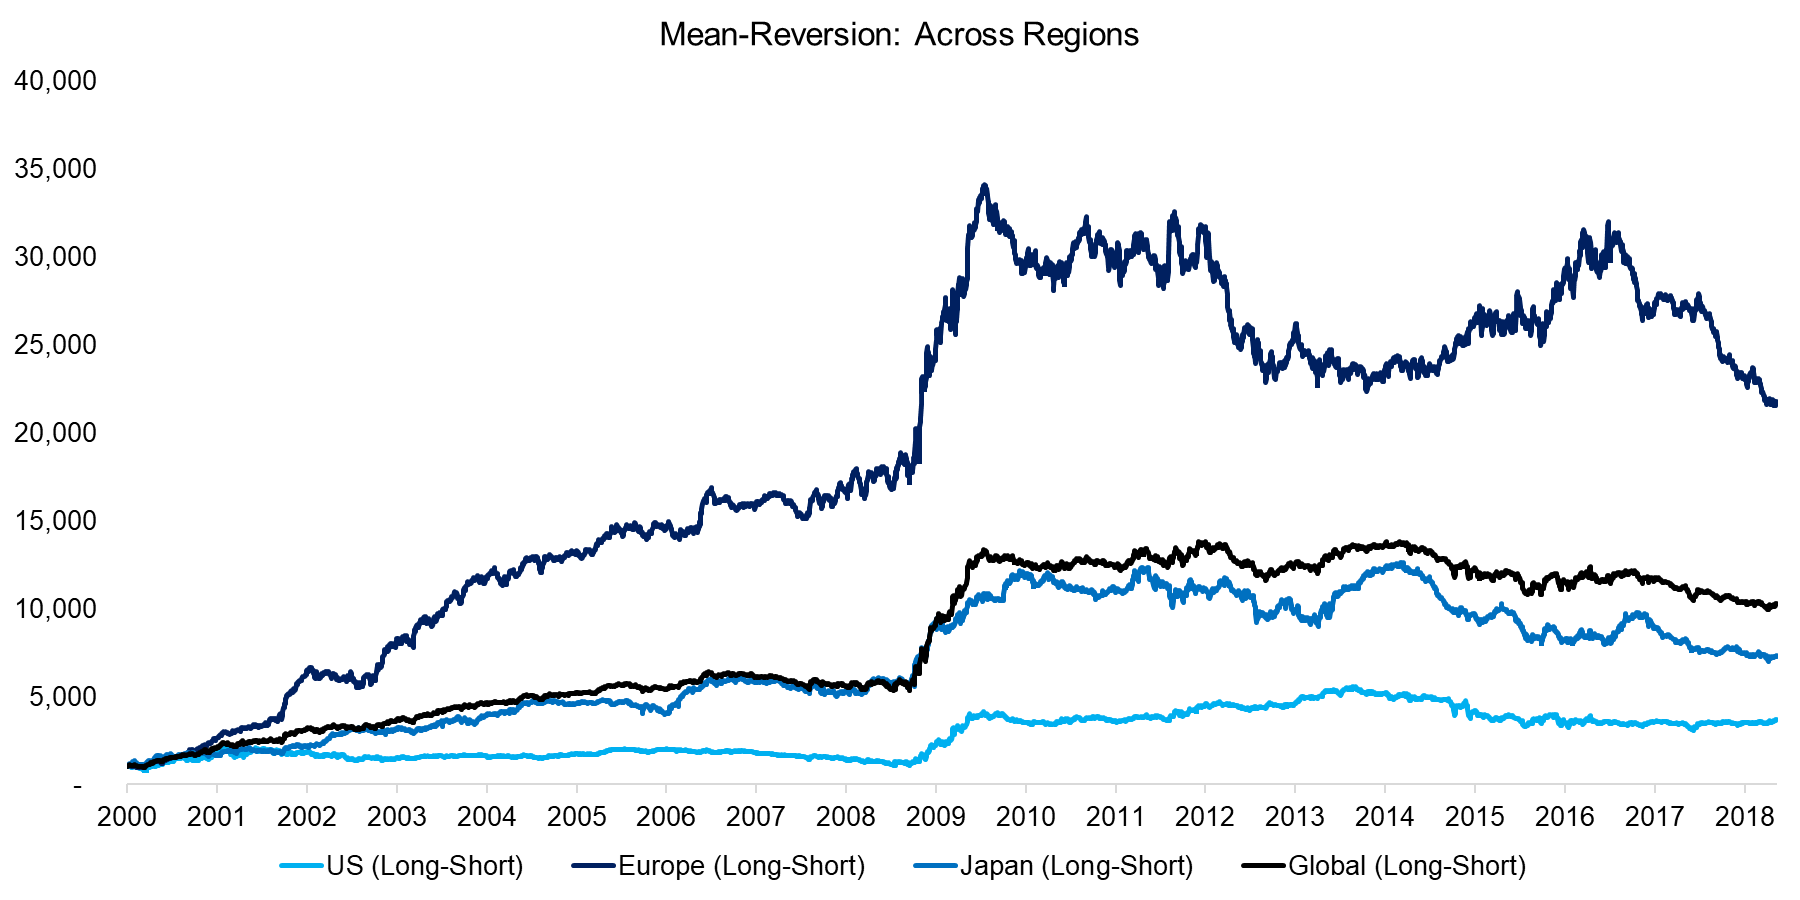 Mean-Reversion Across Regions